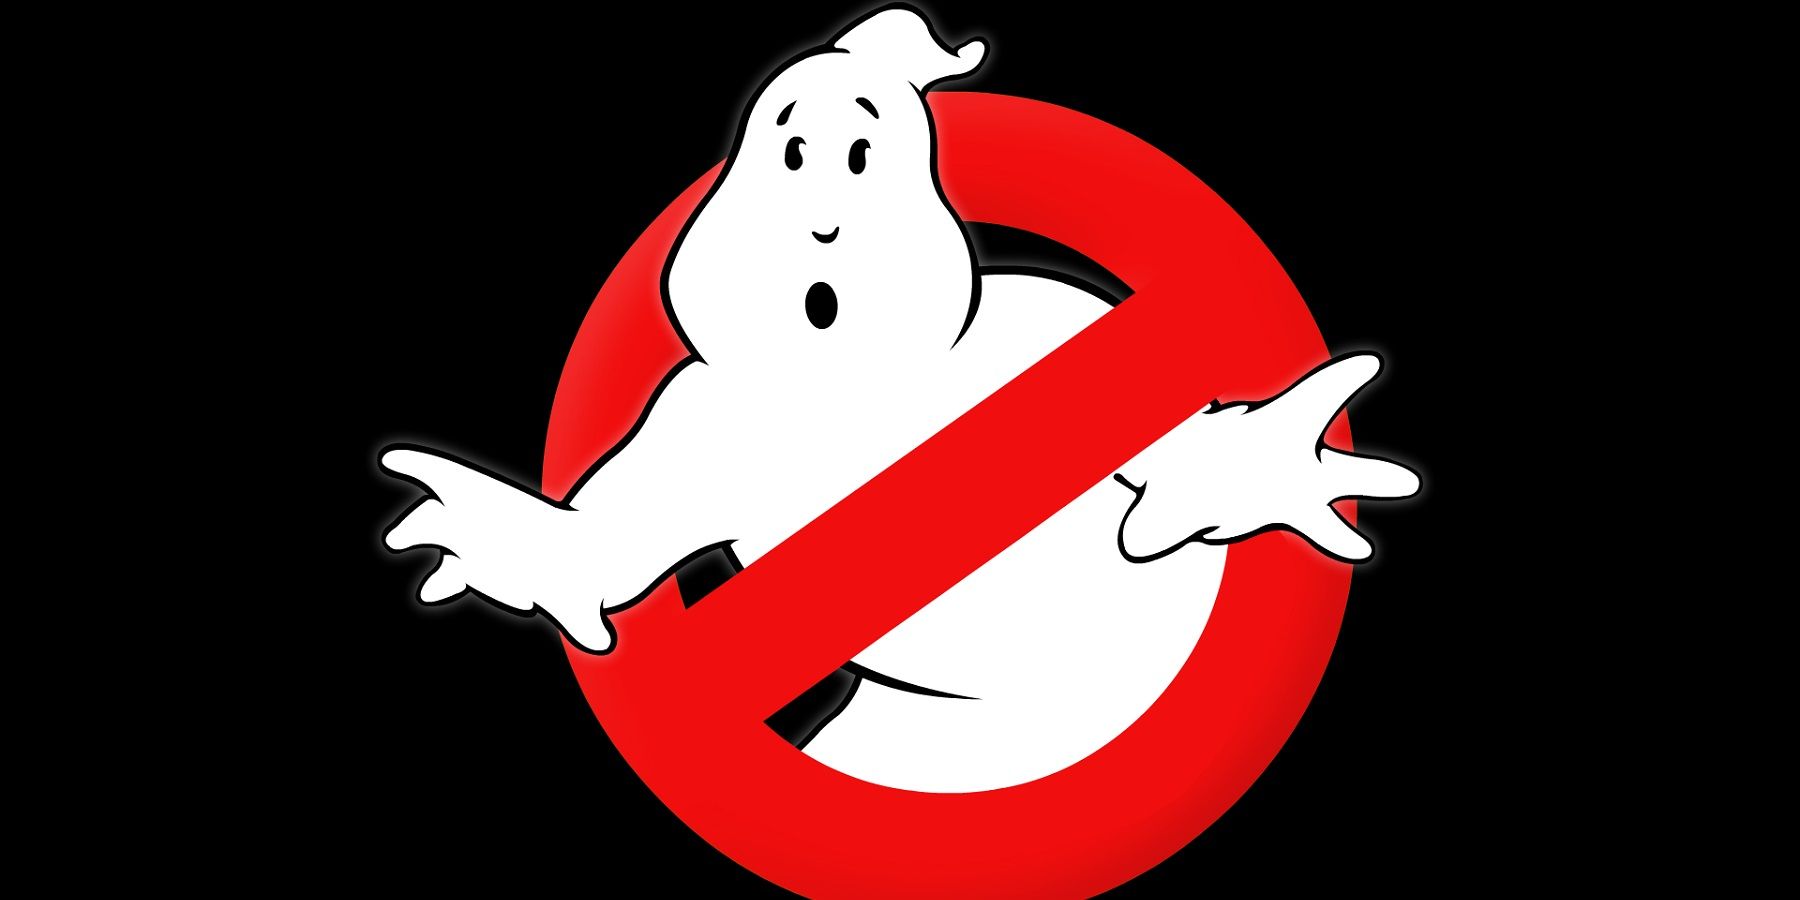 משחק Ghostbusters החדש נמצא לכאורה בפיתוח עד יום שישי ה-13